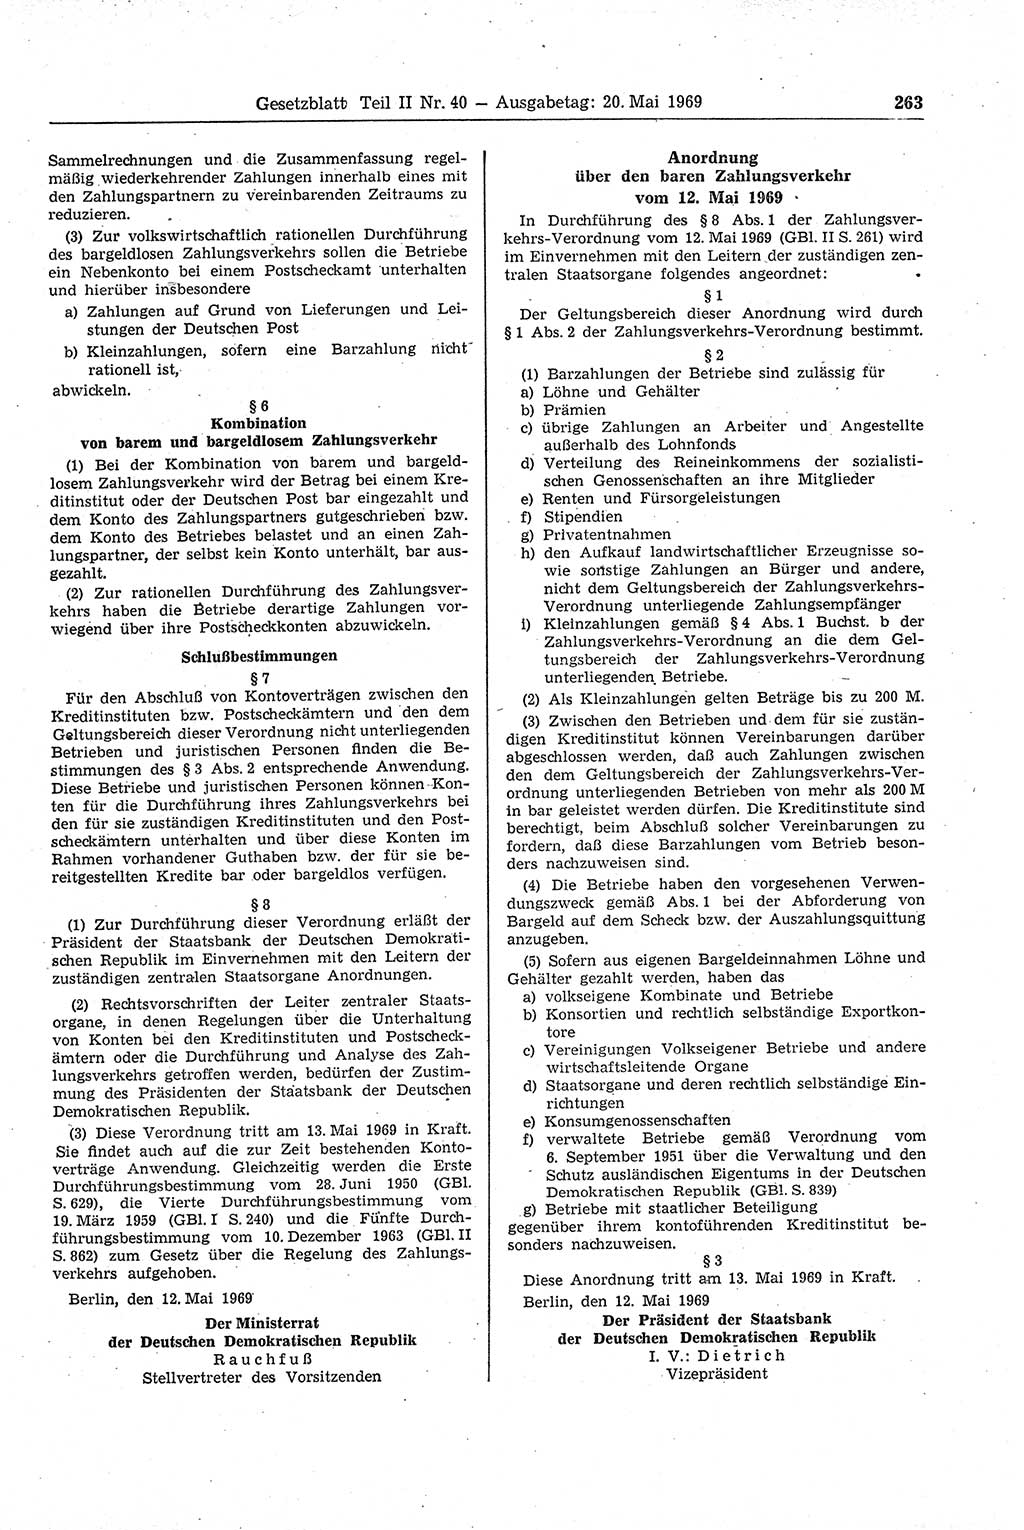 Gesetzblatt (GBl.) der Deutschen Demokratischen Republik (DDR) Teil ⅠⅠ 1969, Seite 263 (GBl. DDR ⅠⅠ 1969, S. 263)